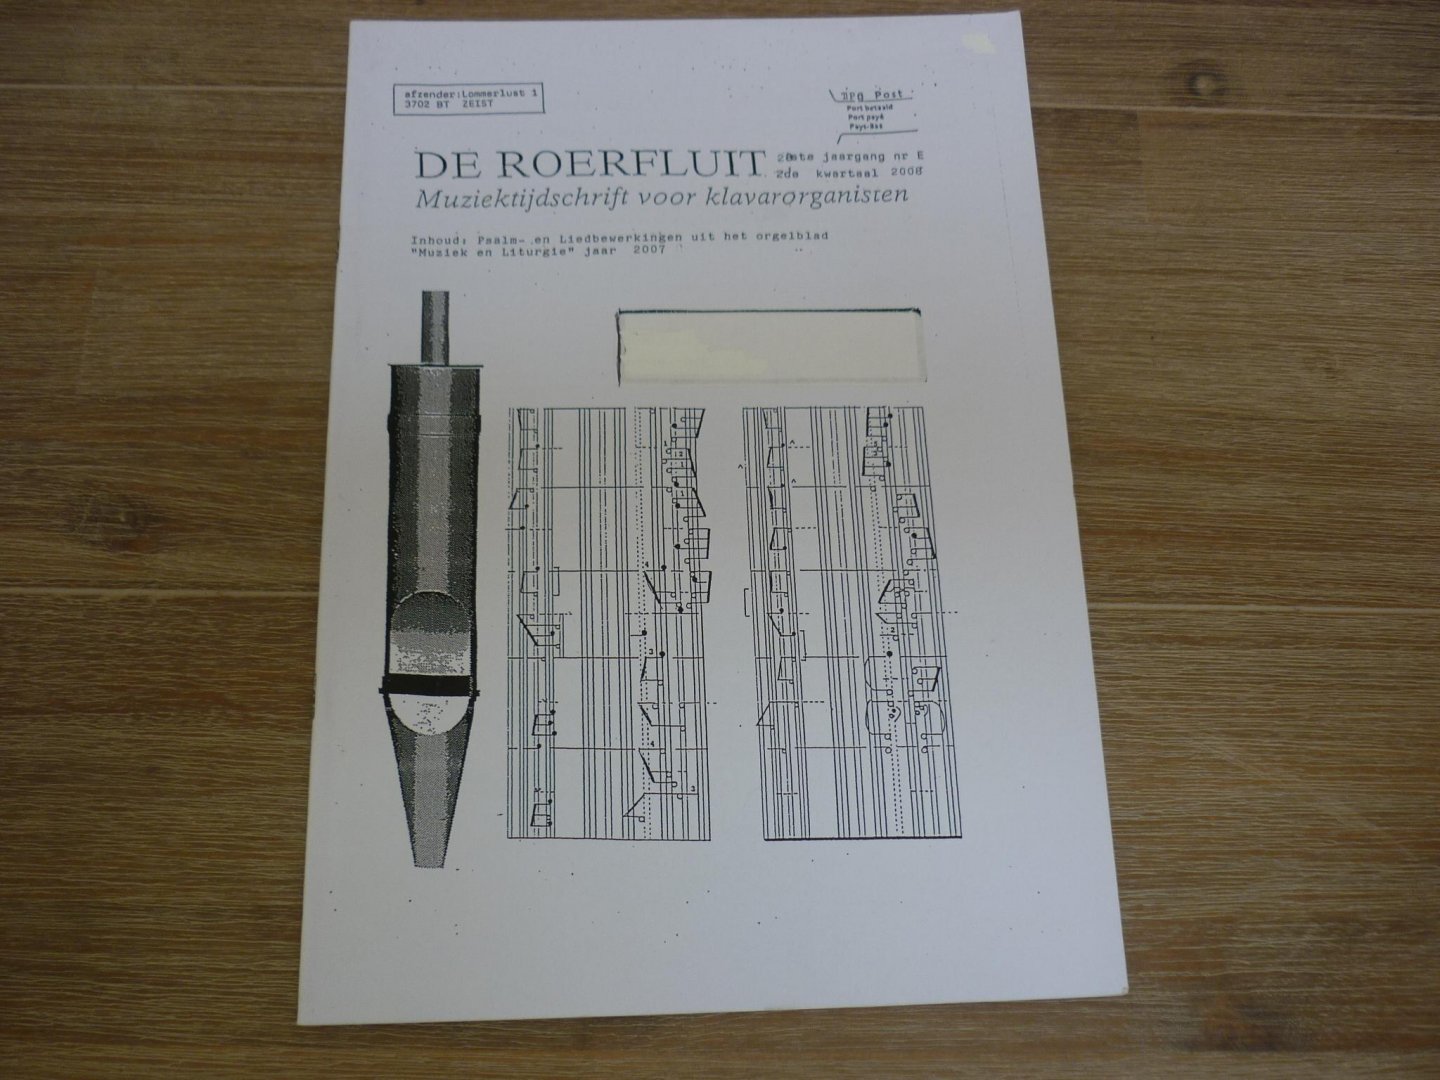 Diverse componisten - De Roerfluit muziek tijdschrift voor klavarorganisten; 28e jaargang; nr. E; 2e kwartaal 2008